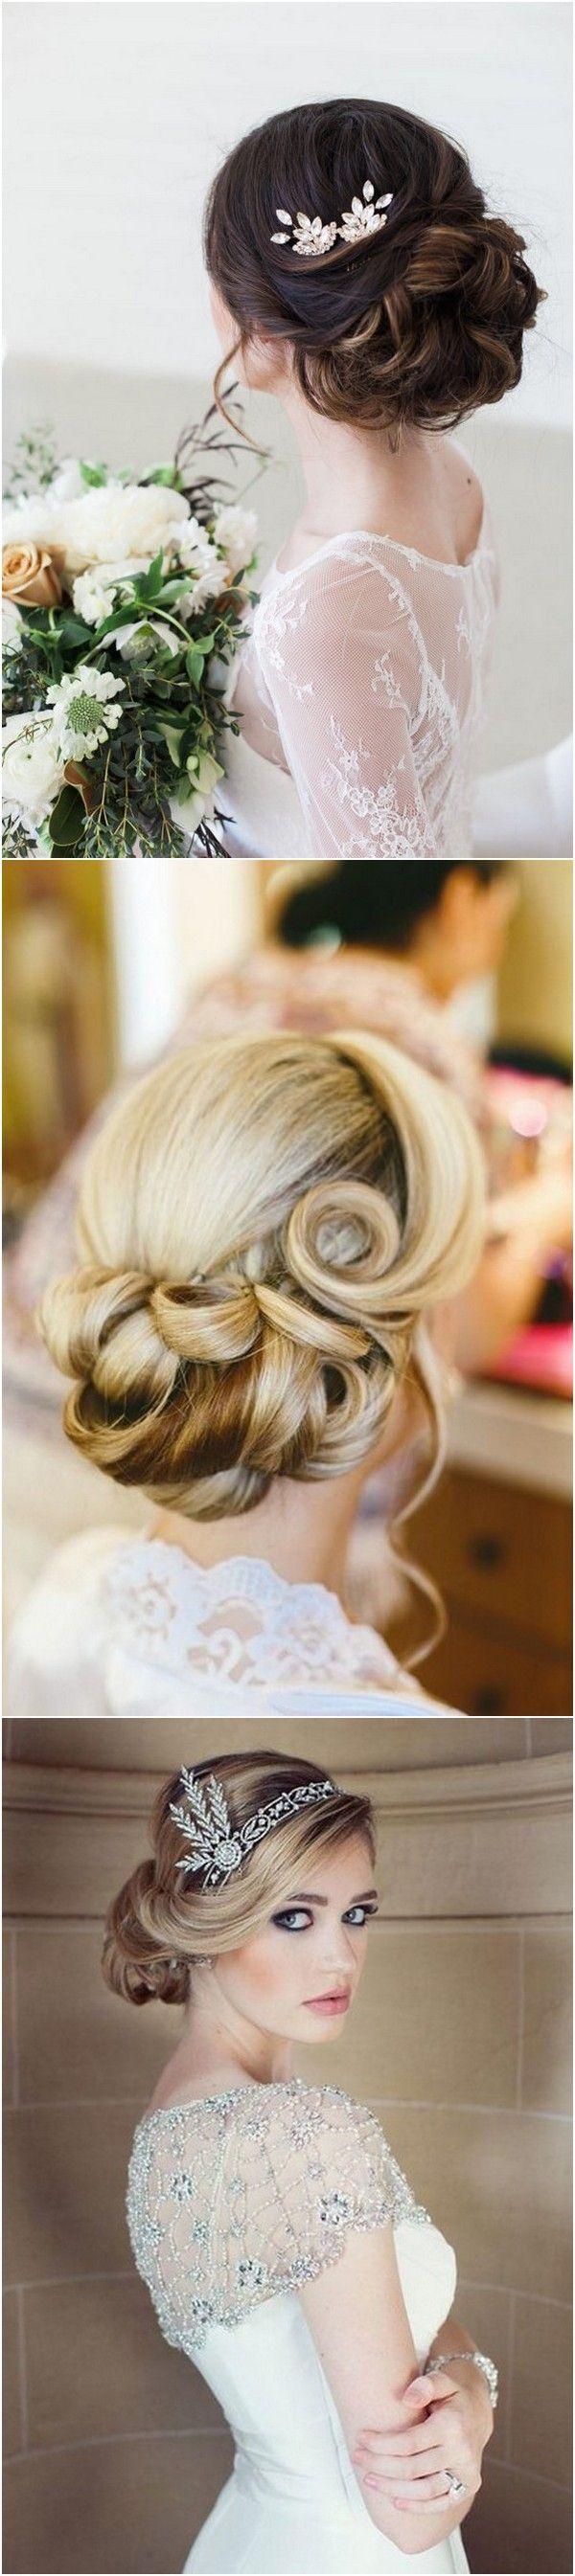 زفاف - Top 20 Vintage Wedding Hairstyles For Brides